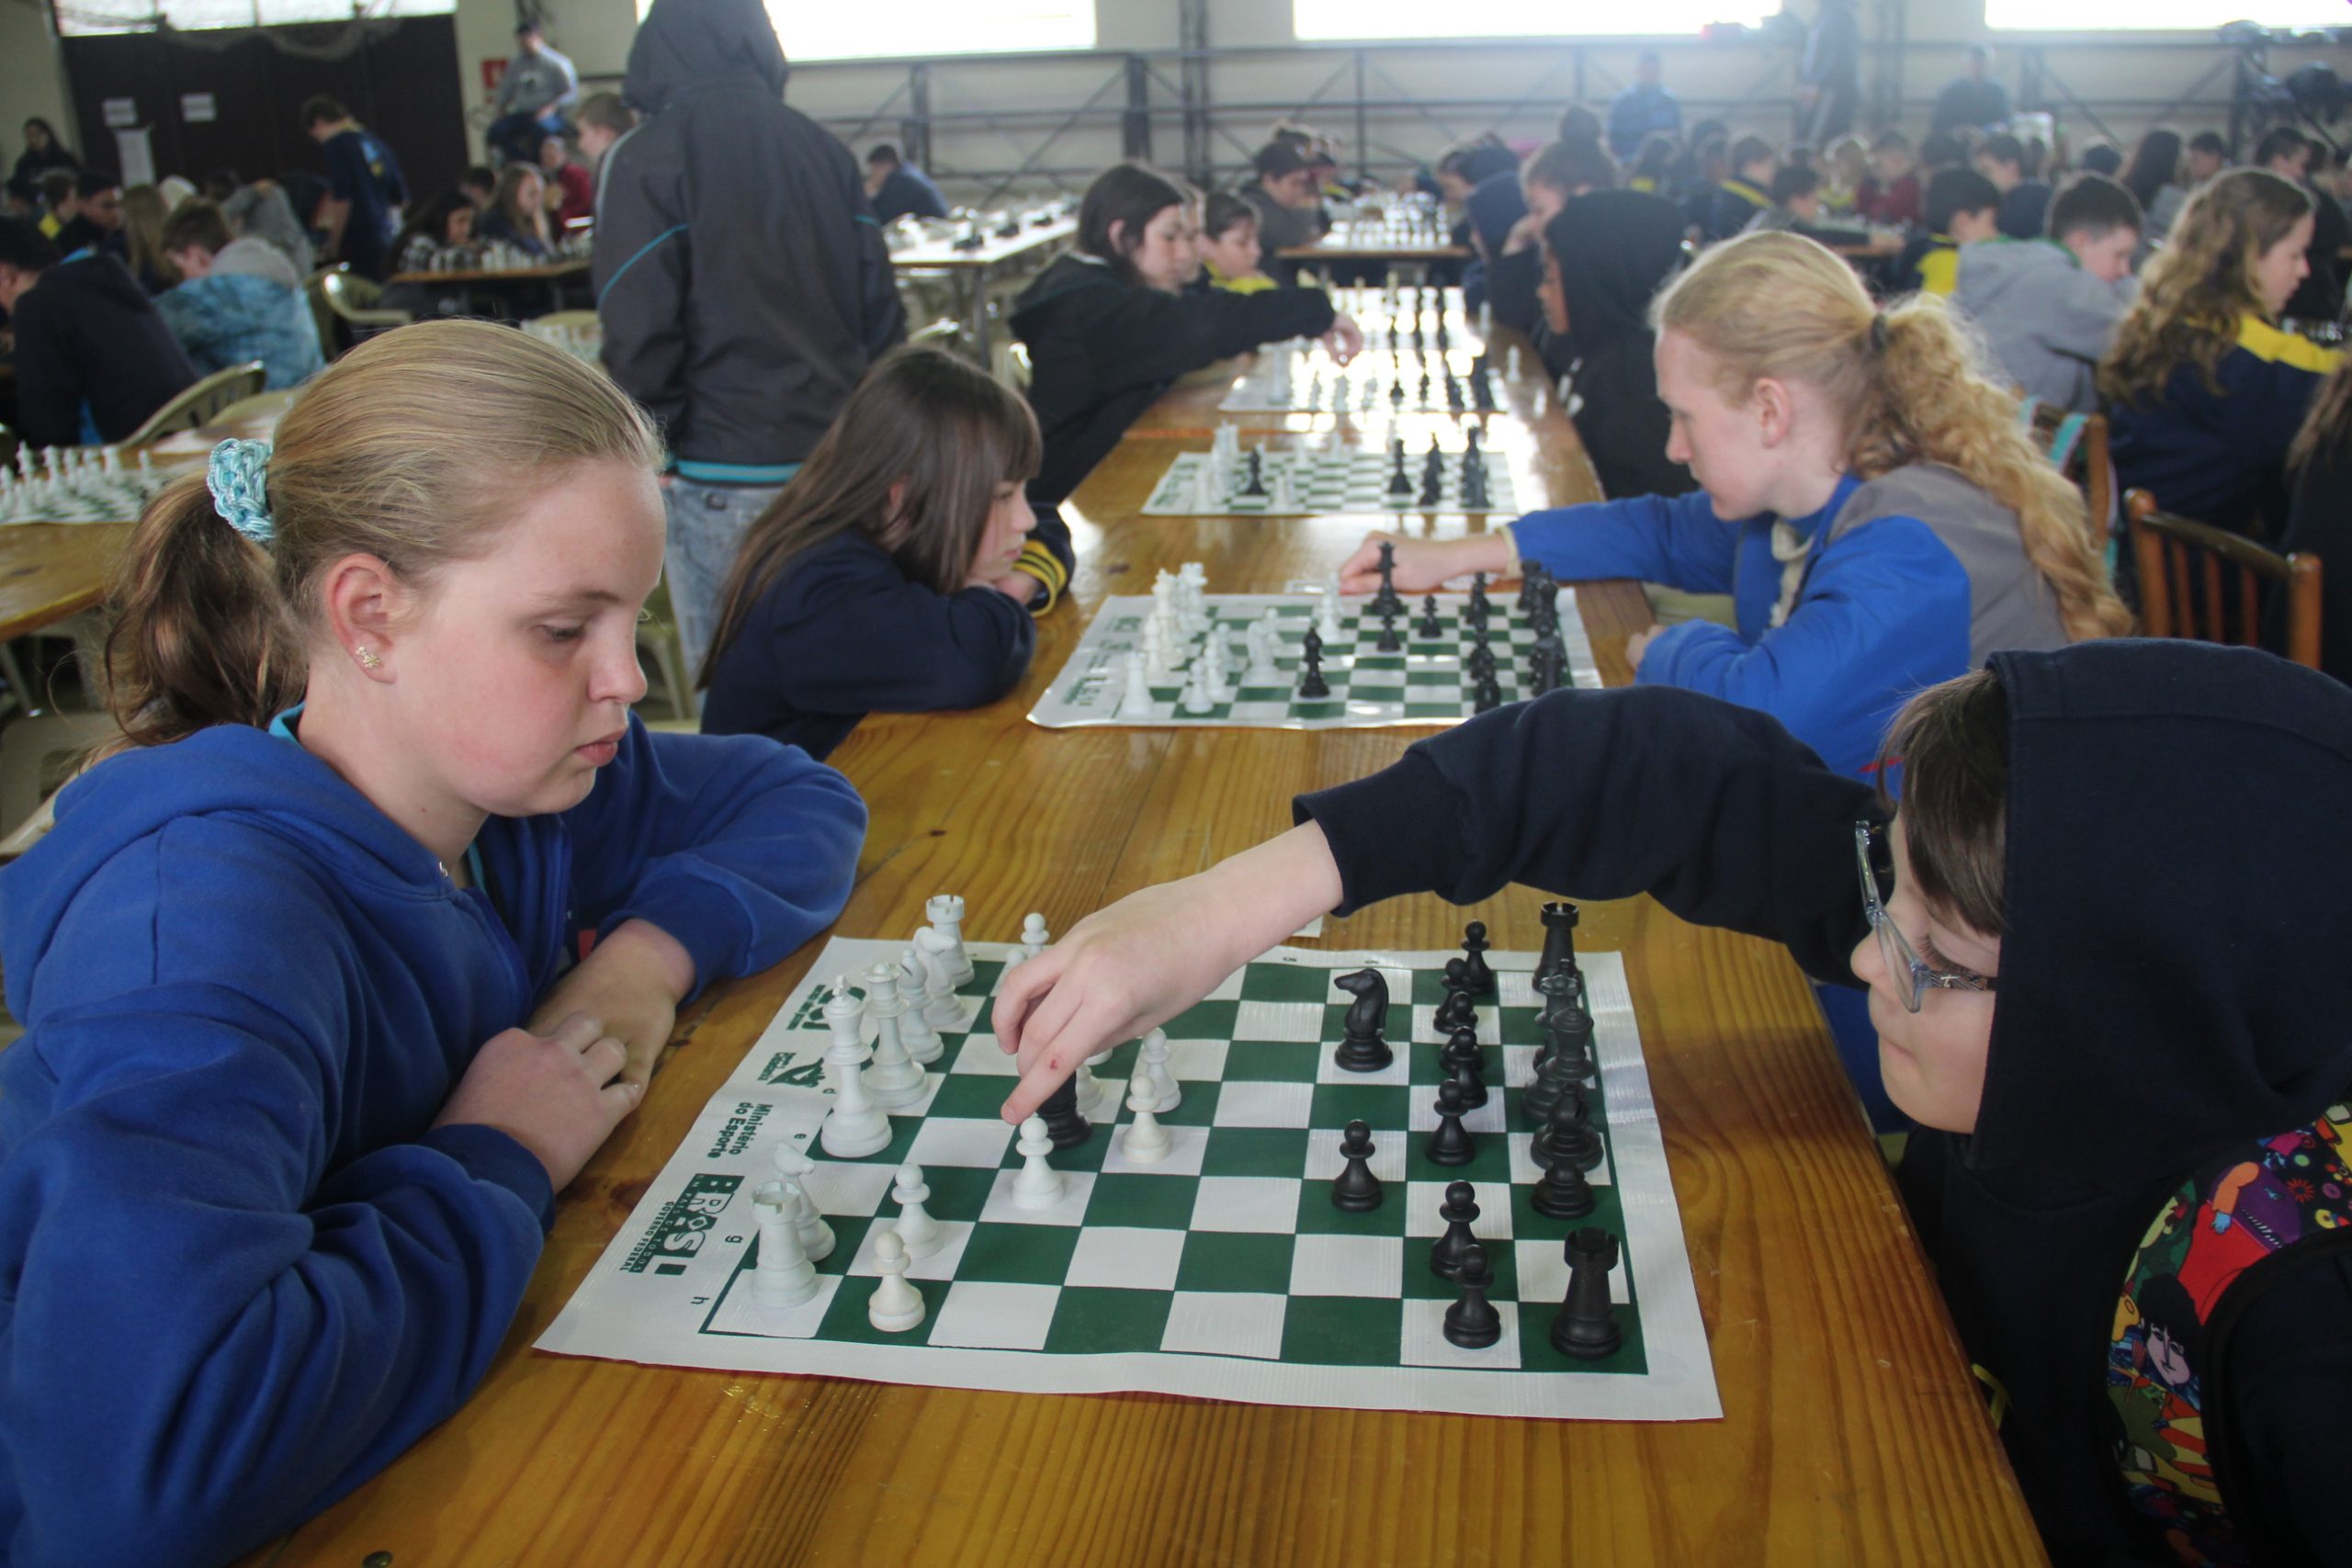 Curso de xadrez: inscrições seguem até quinta - Notícias e eventos